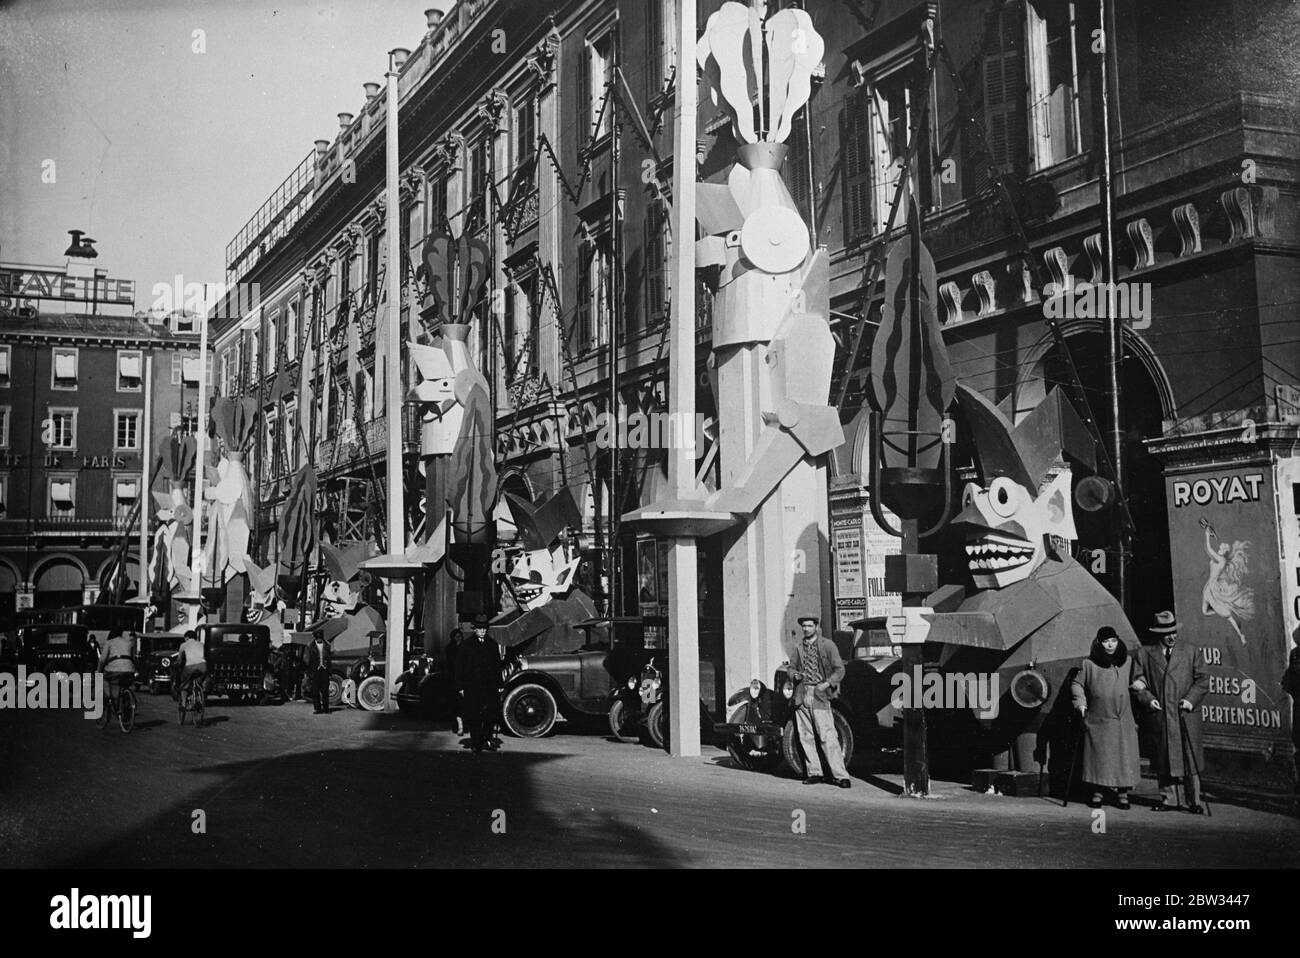 Lampes et rues décorées pour le carnaval de Nice . Les rues de Nice , France , ont été décorées dans toutes sortes d'images particulières pour le grand carnaval de Nice . Des images curieuses érigées dans les rues de Nice pour le carnaval . 9 février 1932 Banque D'Images